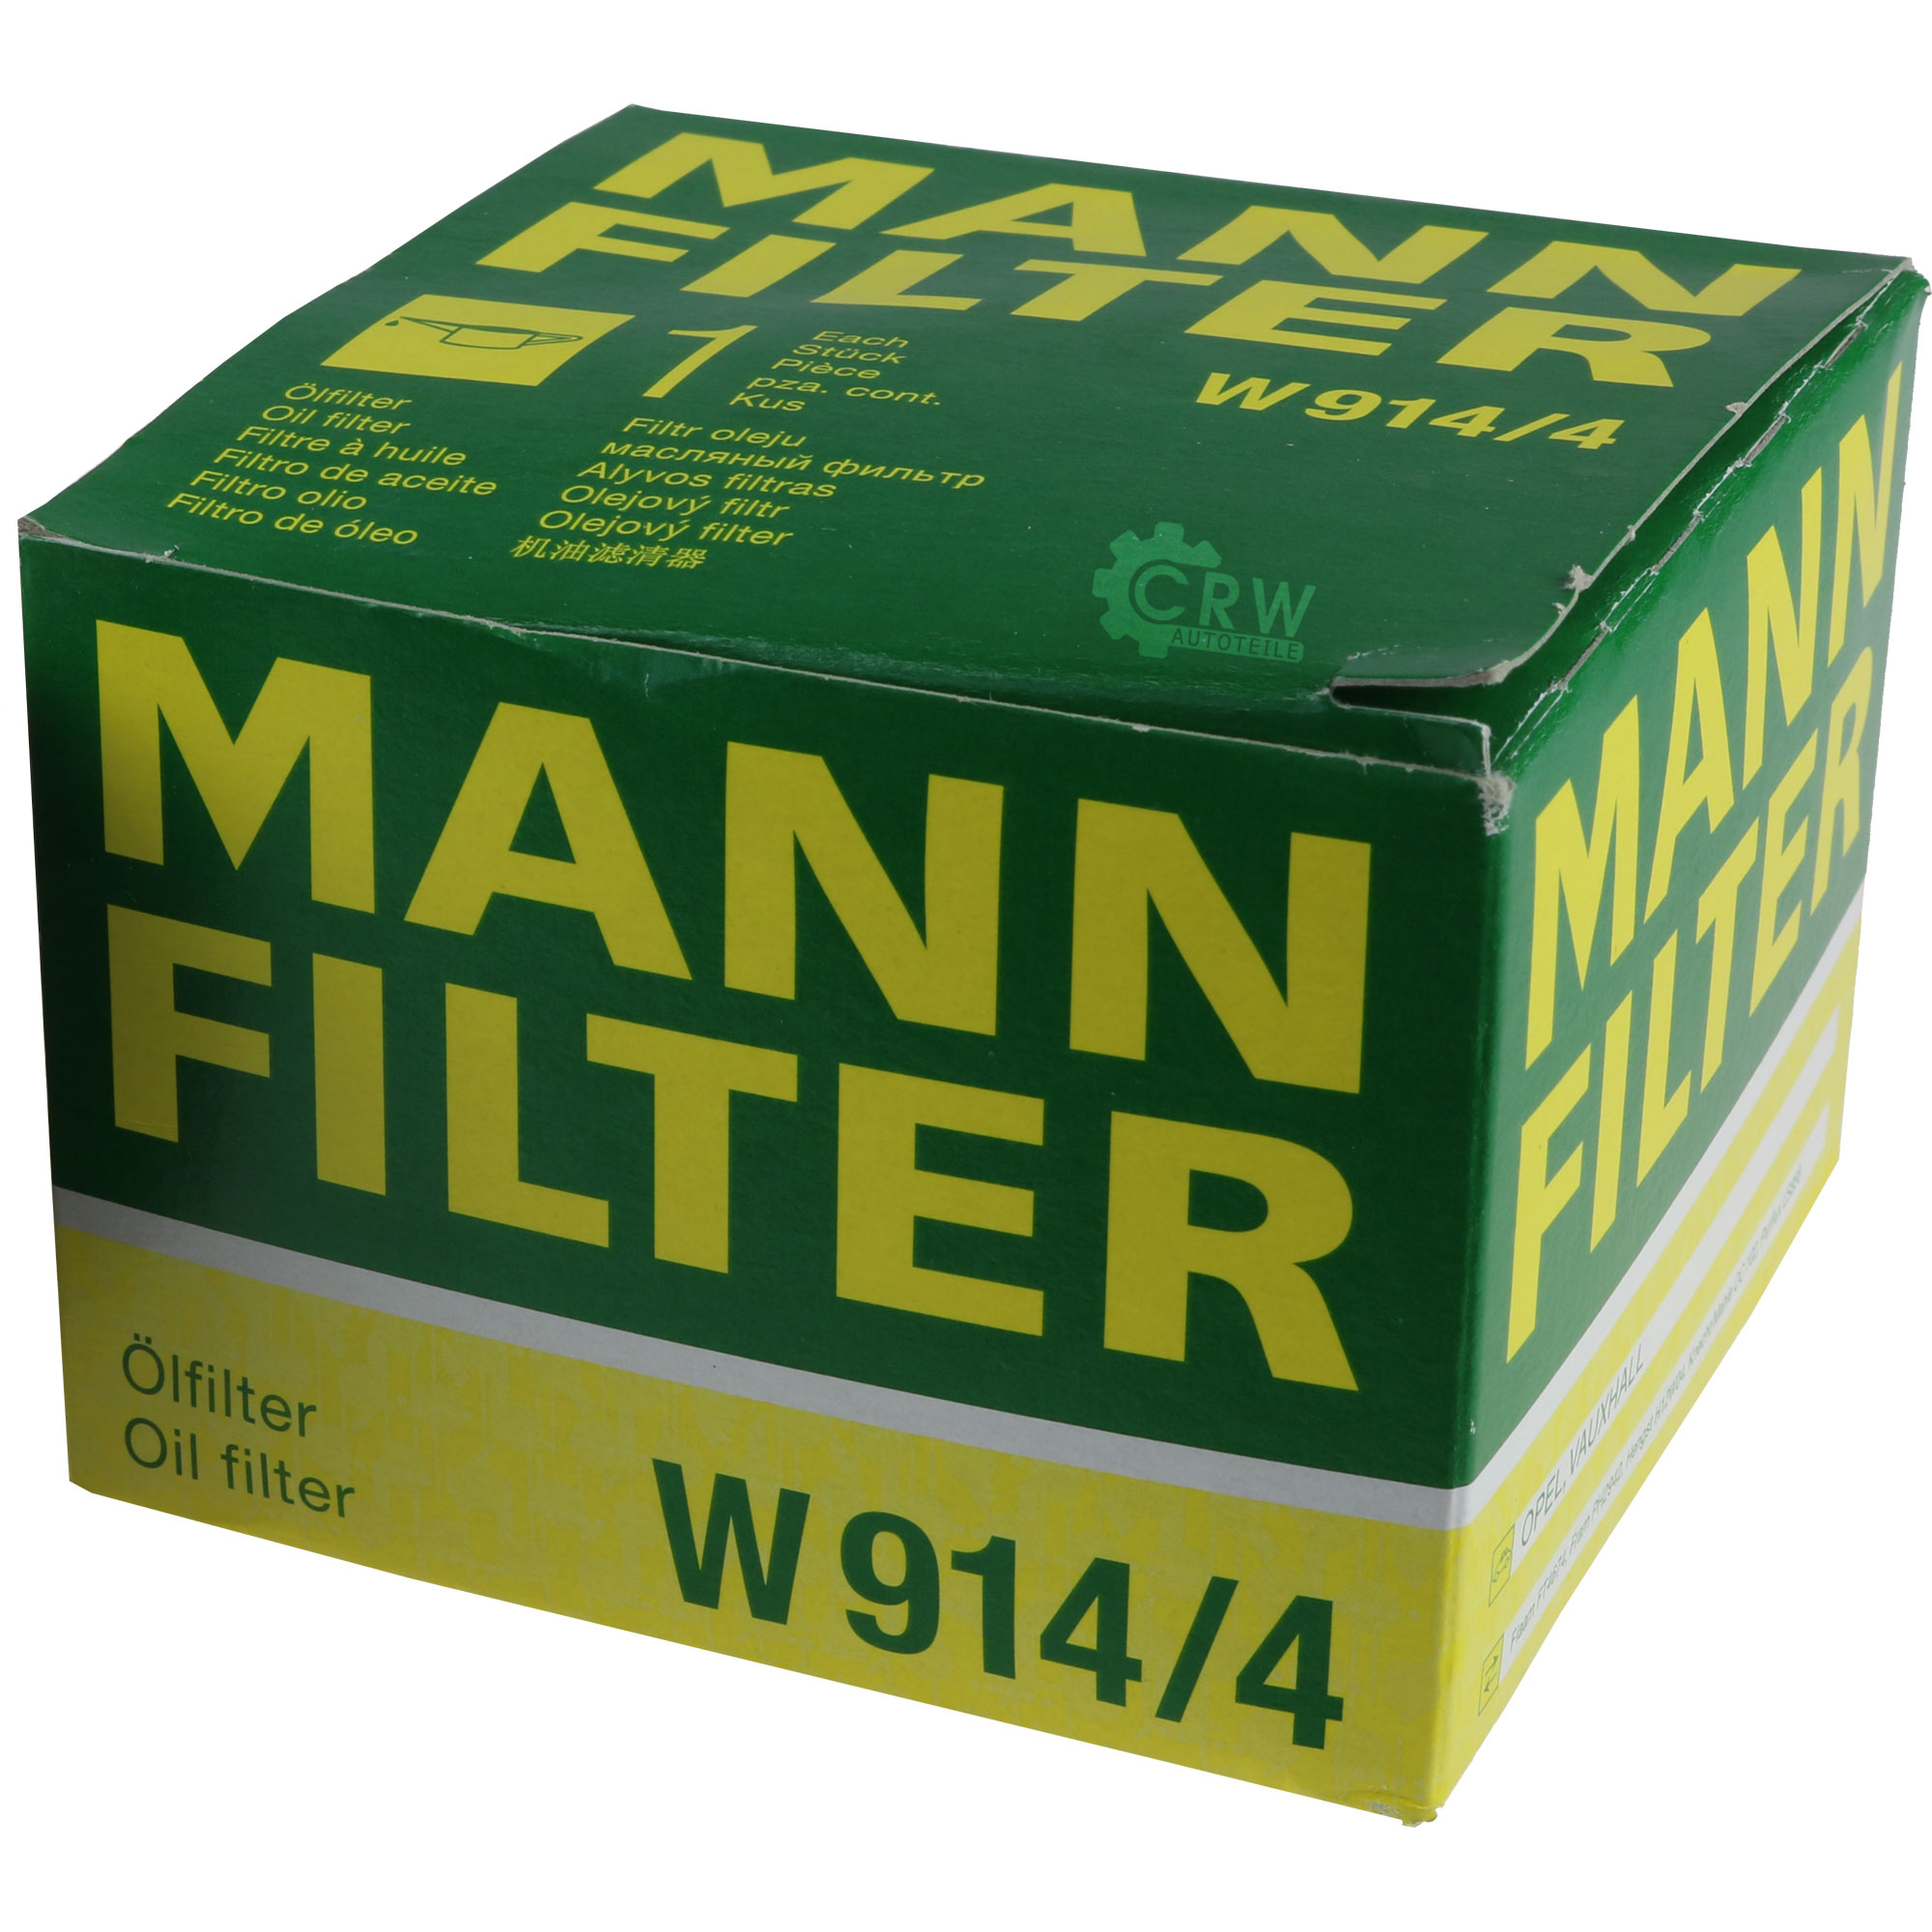 MANN-FILTER Ölfilter W 914/4 Oil Filter